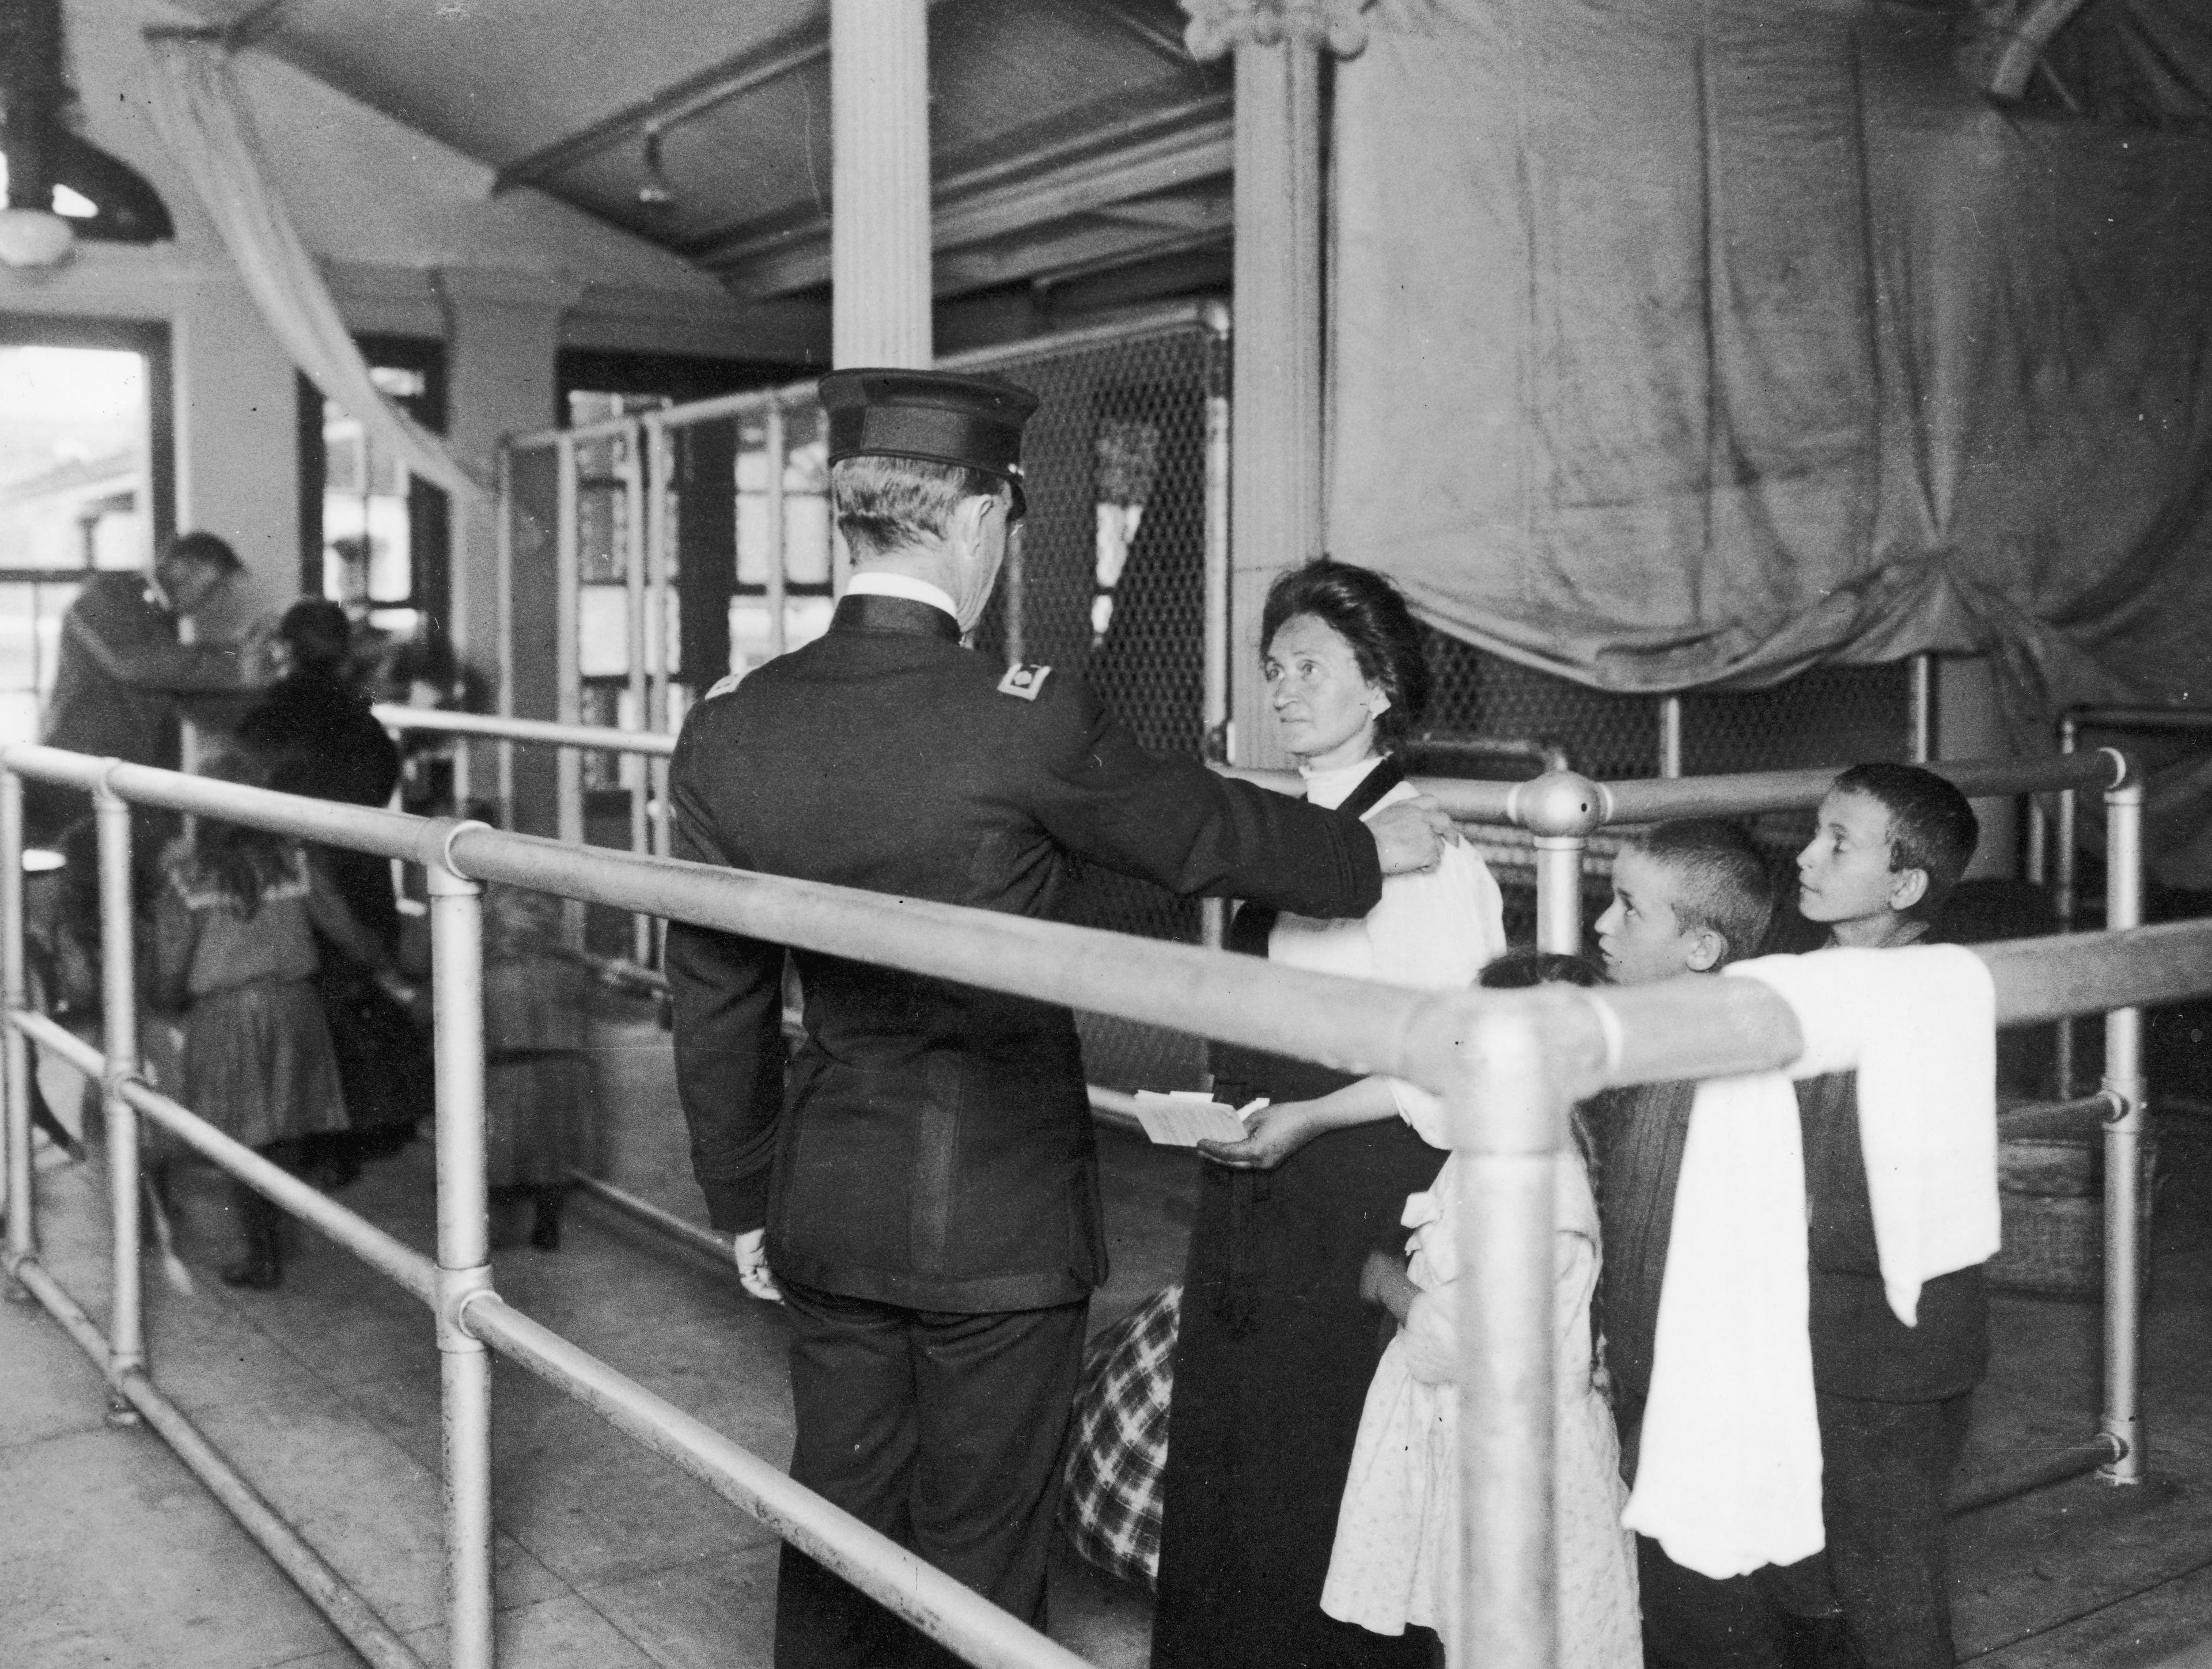 Ellis Island Immigration